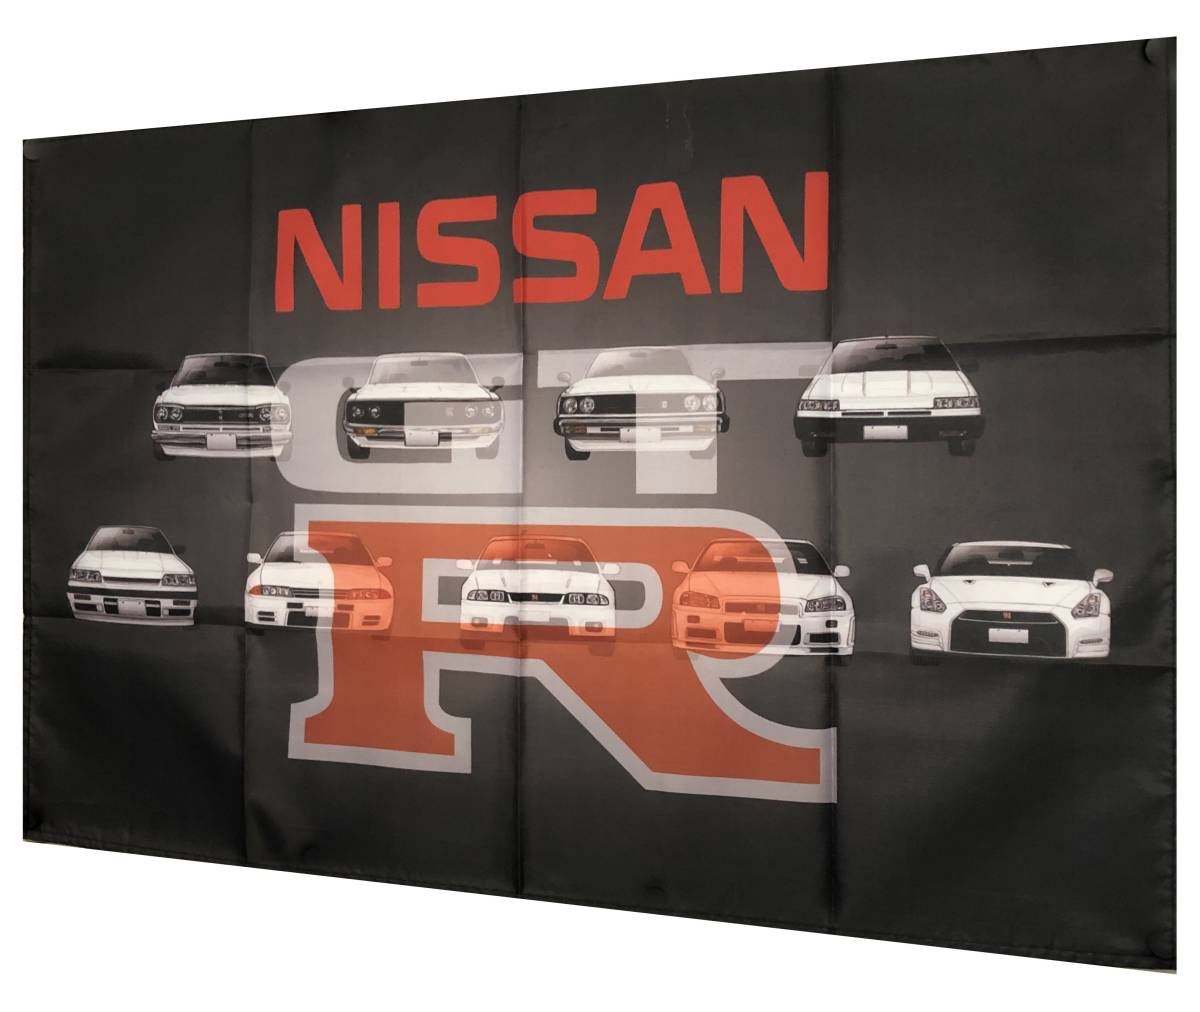  history fee GTR * garage equipment ornament specification * gtr02 GTR banner GTR flag GTR flag tapestry flag garage miscellaneous goods Nissan Ken&Mary Hakosuka Japan 